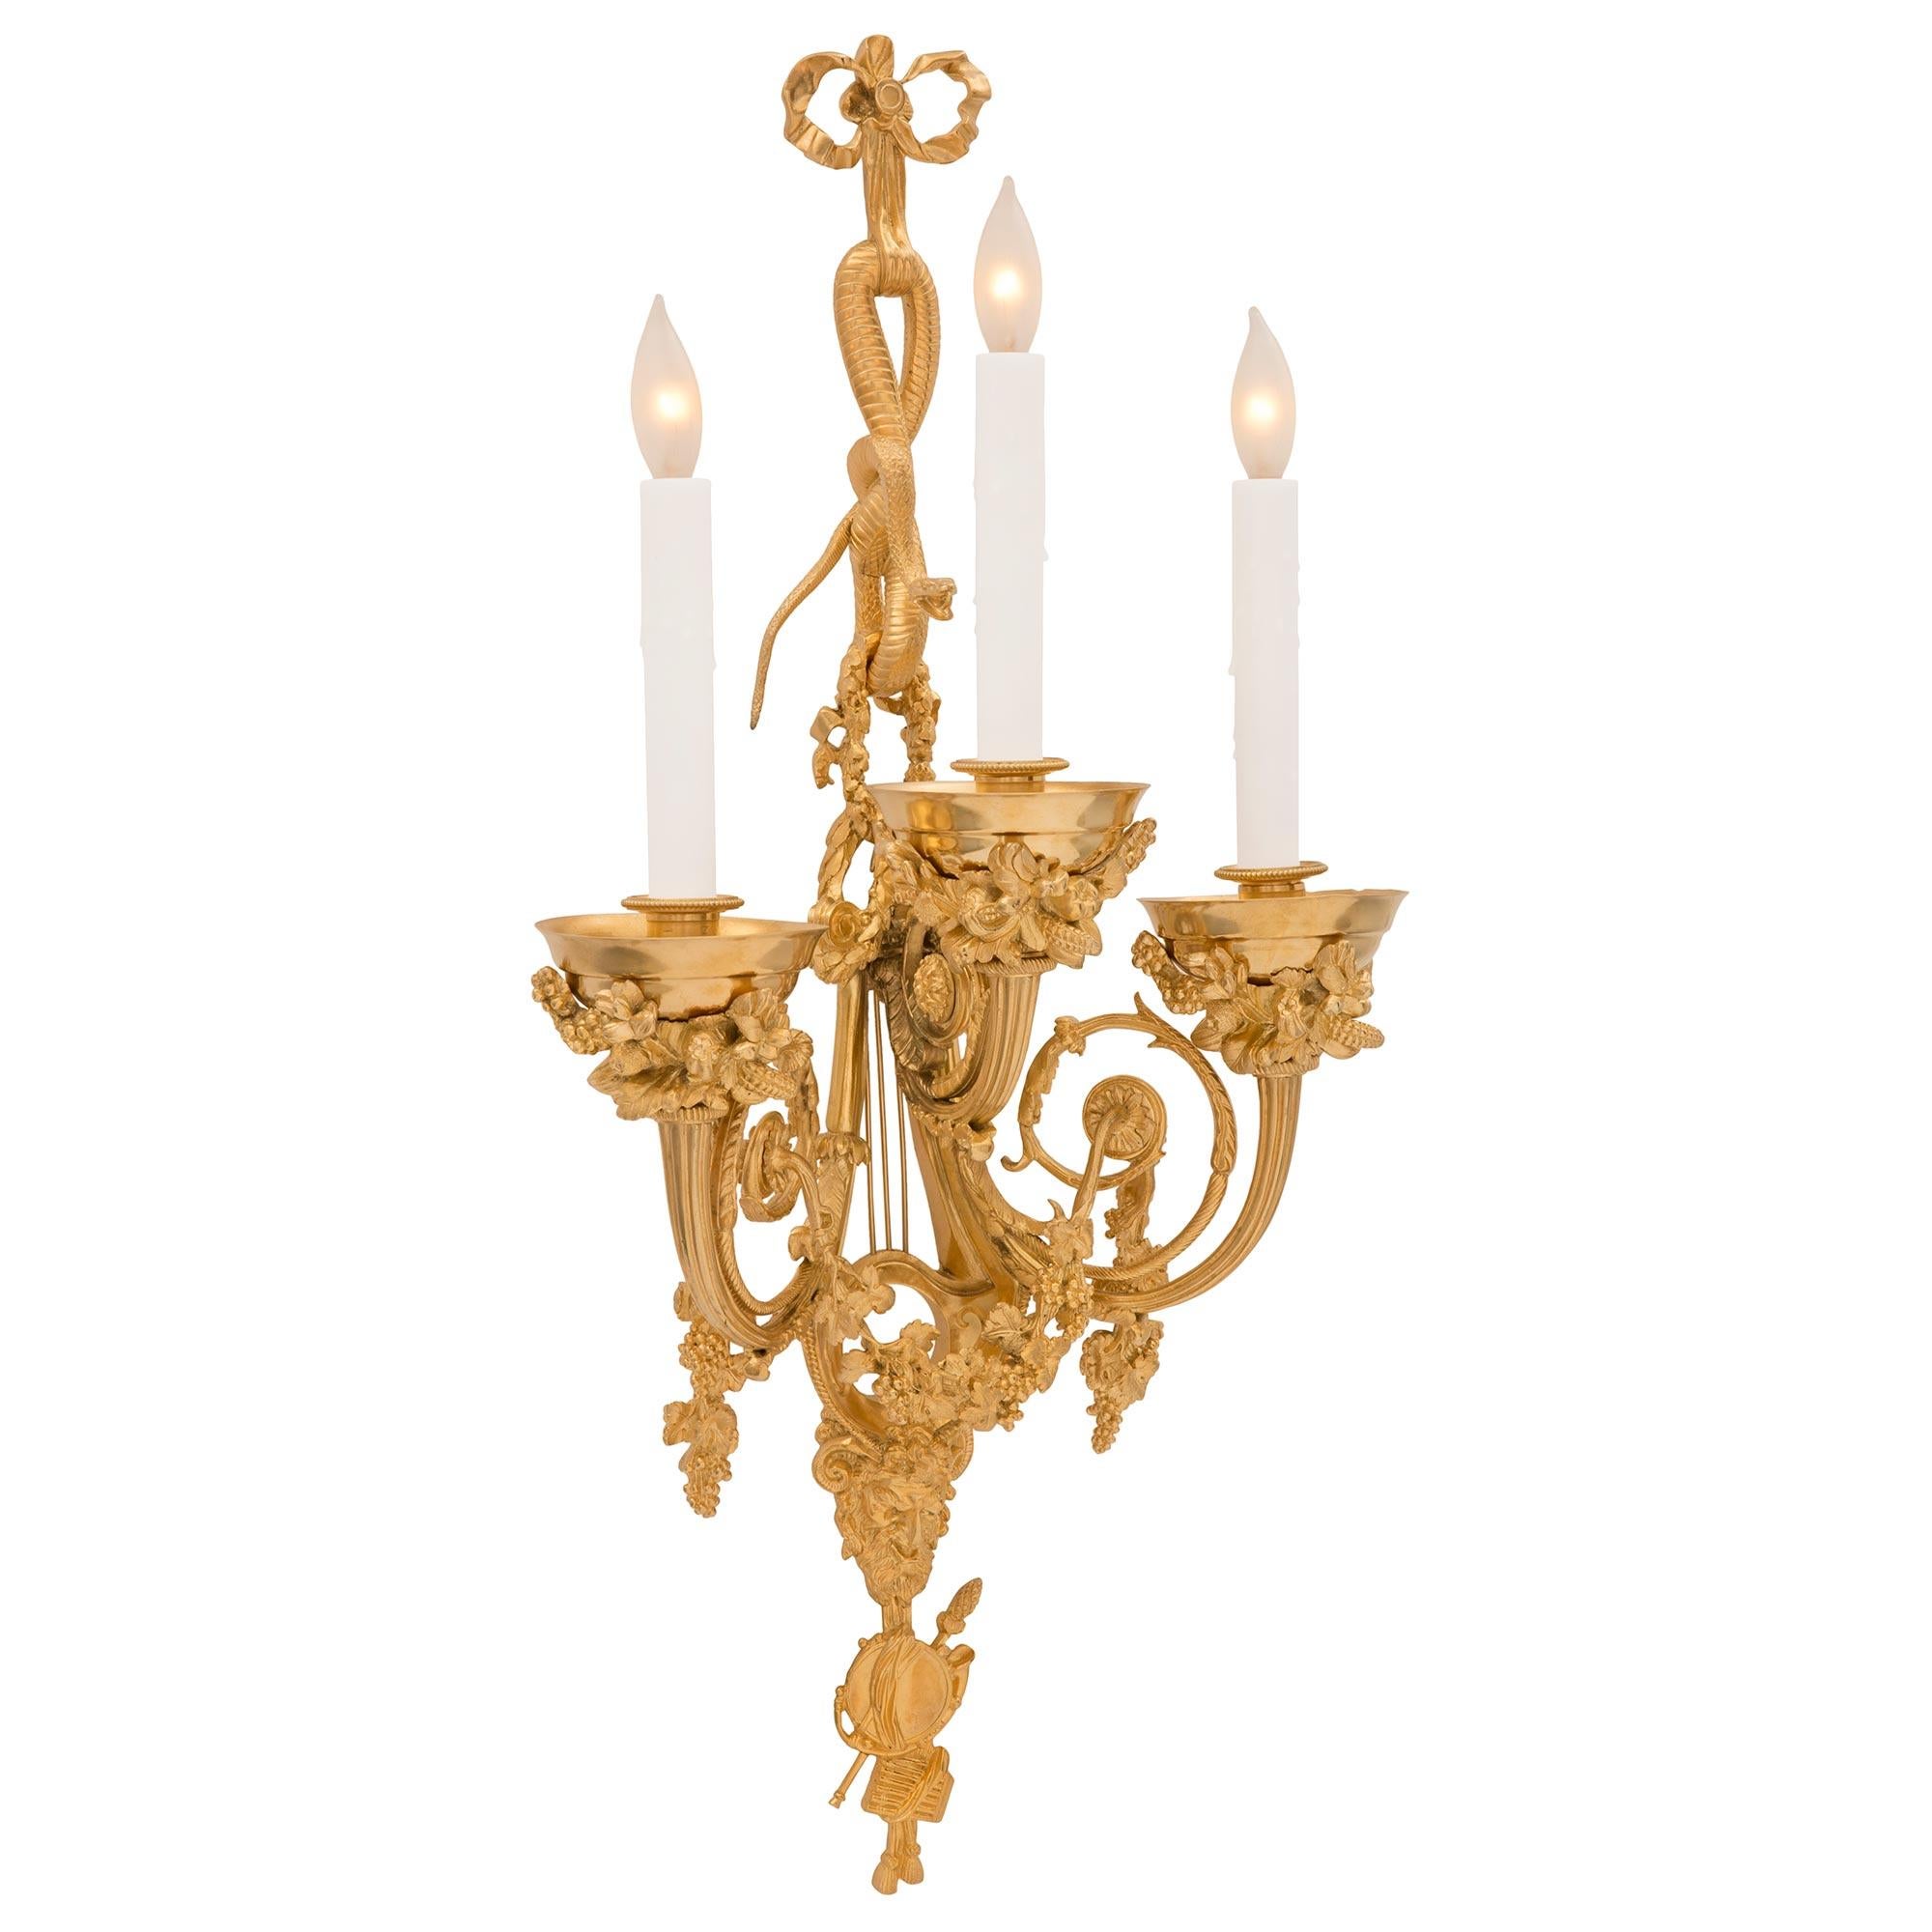 Une étonnante et très haute qualité des appliques en bronze doré de style Louis XVI du 19ème siècle et de la période Belle Époque, signée Vian. Chaque applique est centrée par de magnifiques instruments de musique finement détaillés à la base, avec